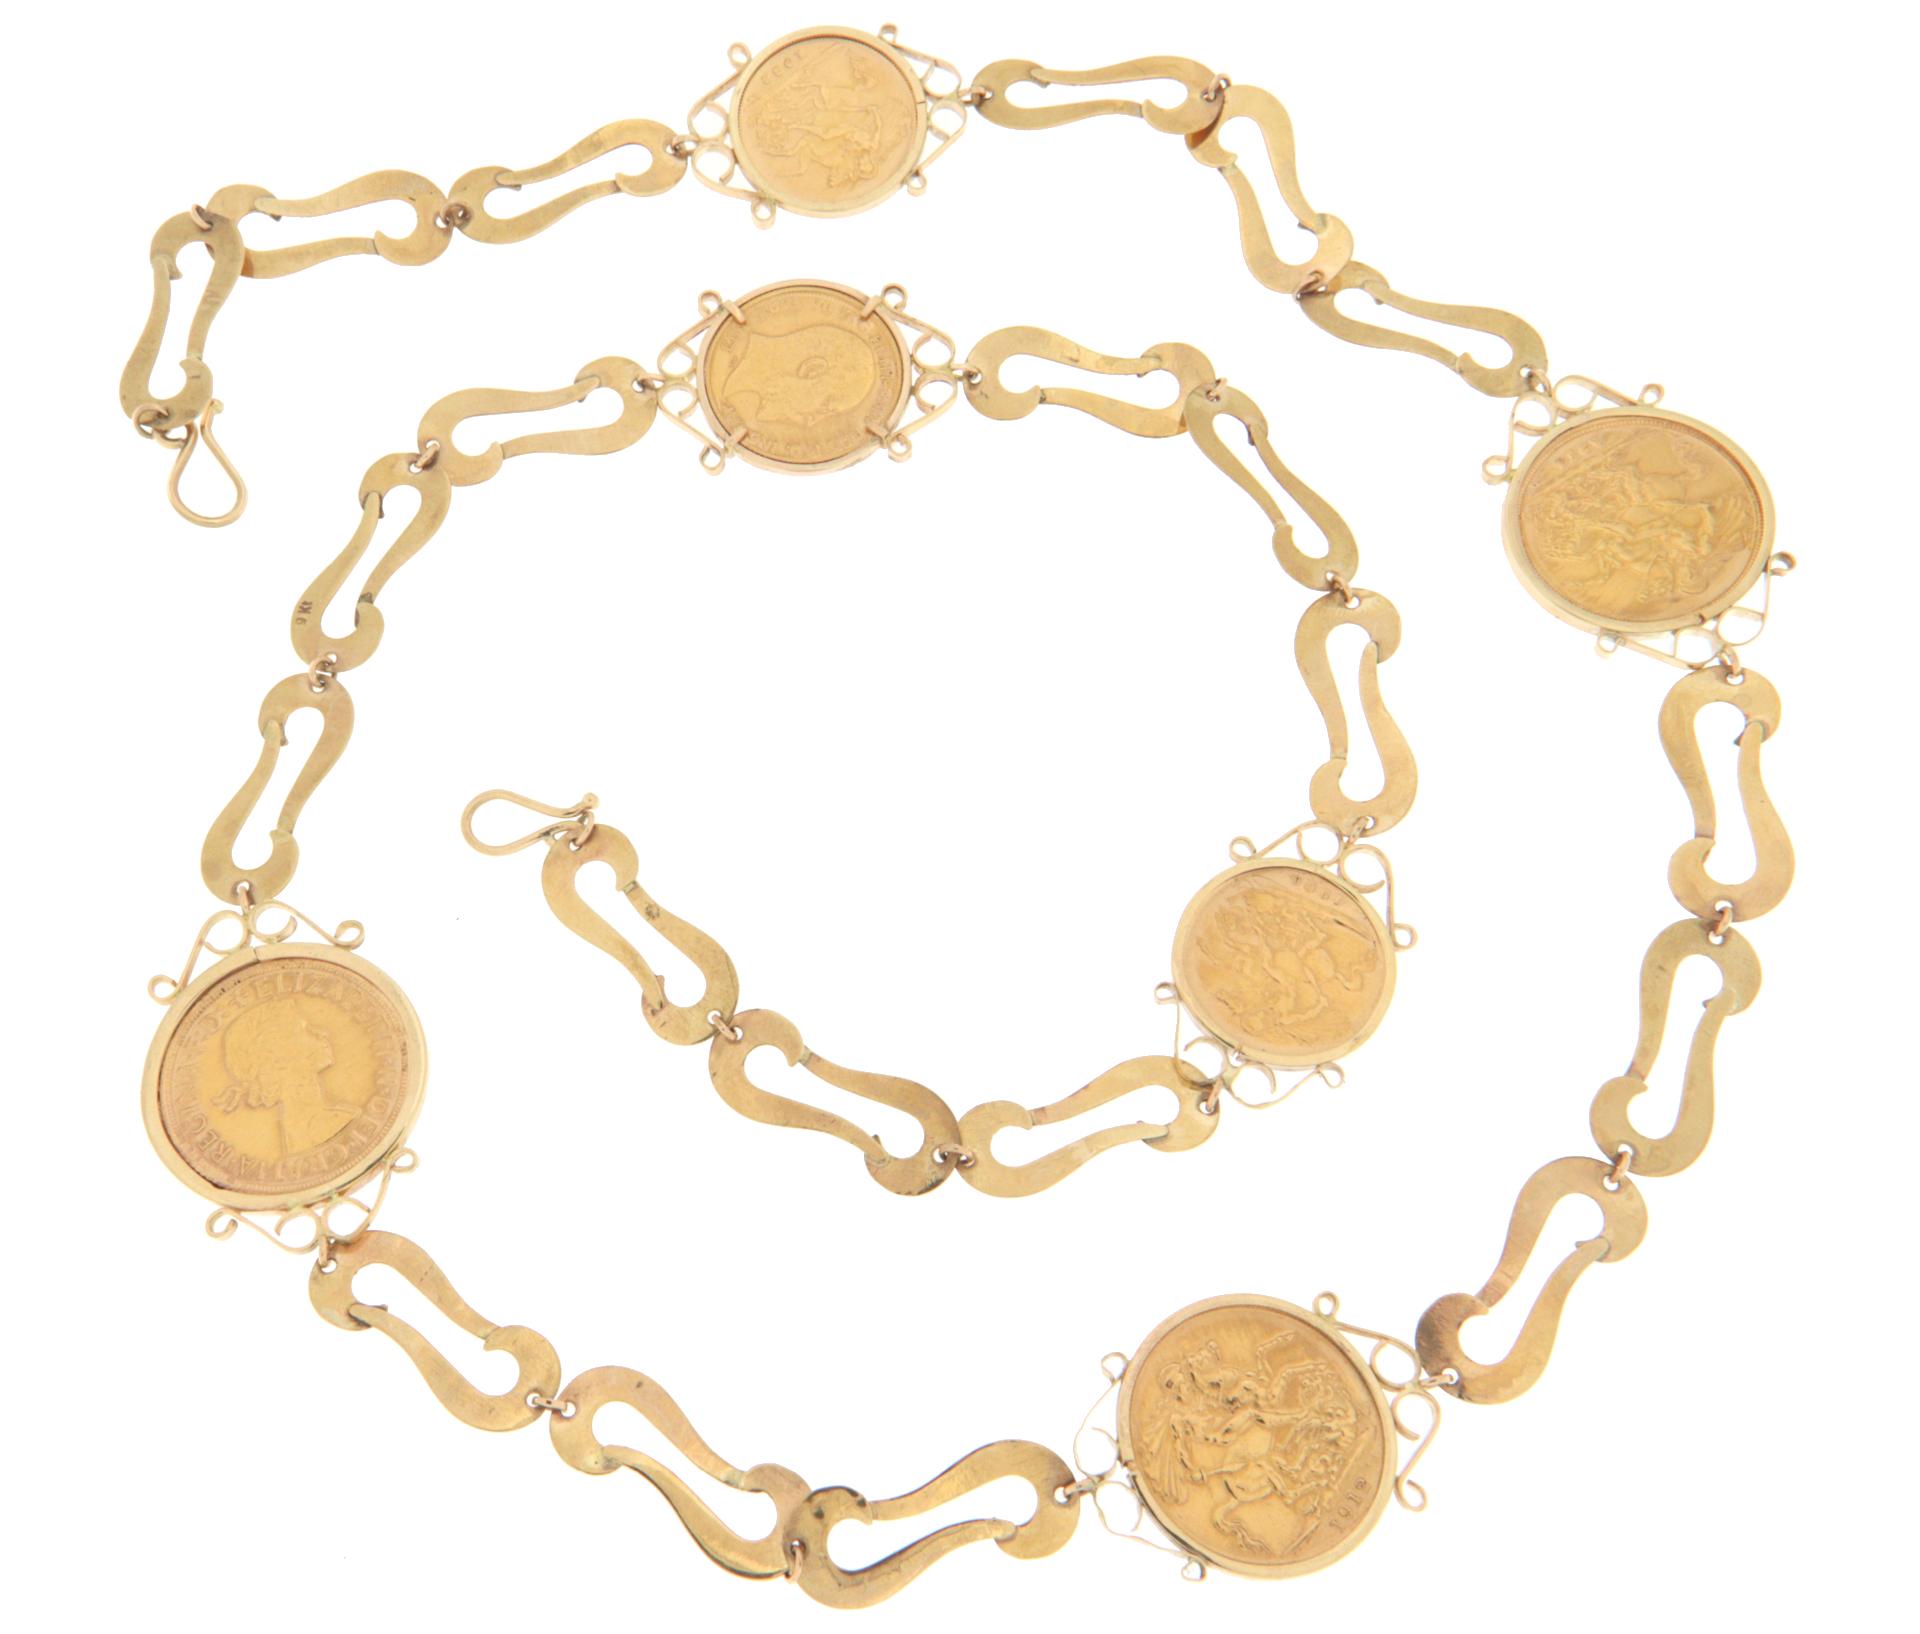 Women's Ancient 9 Karat Yellow Gold and 22 Karat British Coins Chain Necklace